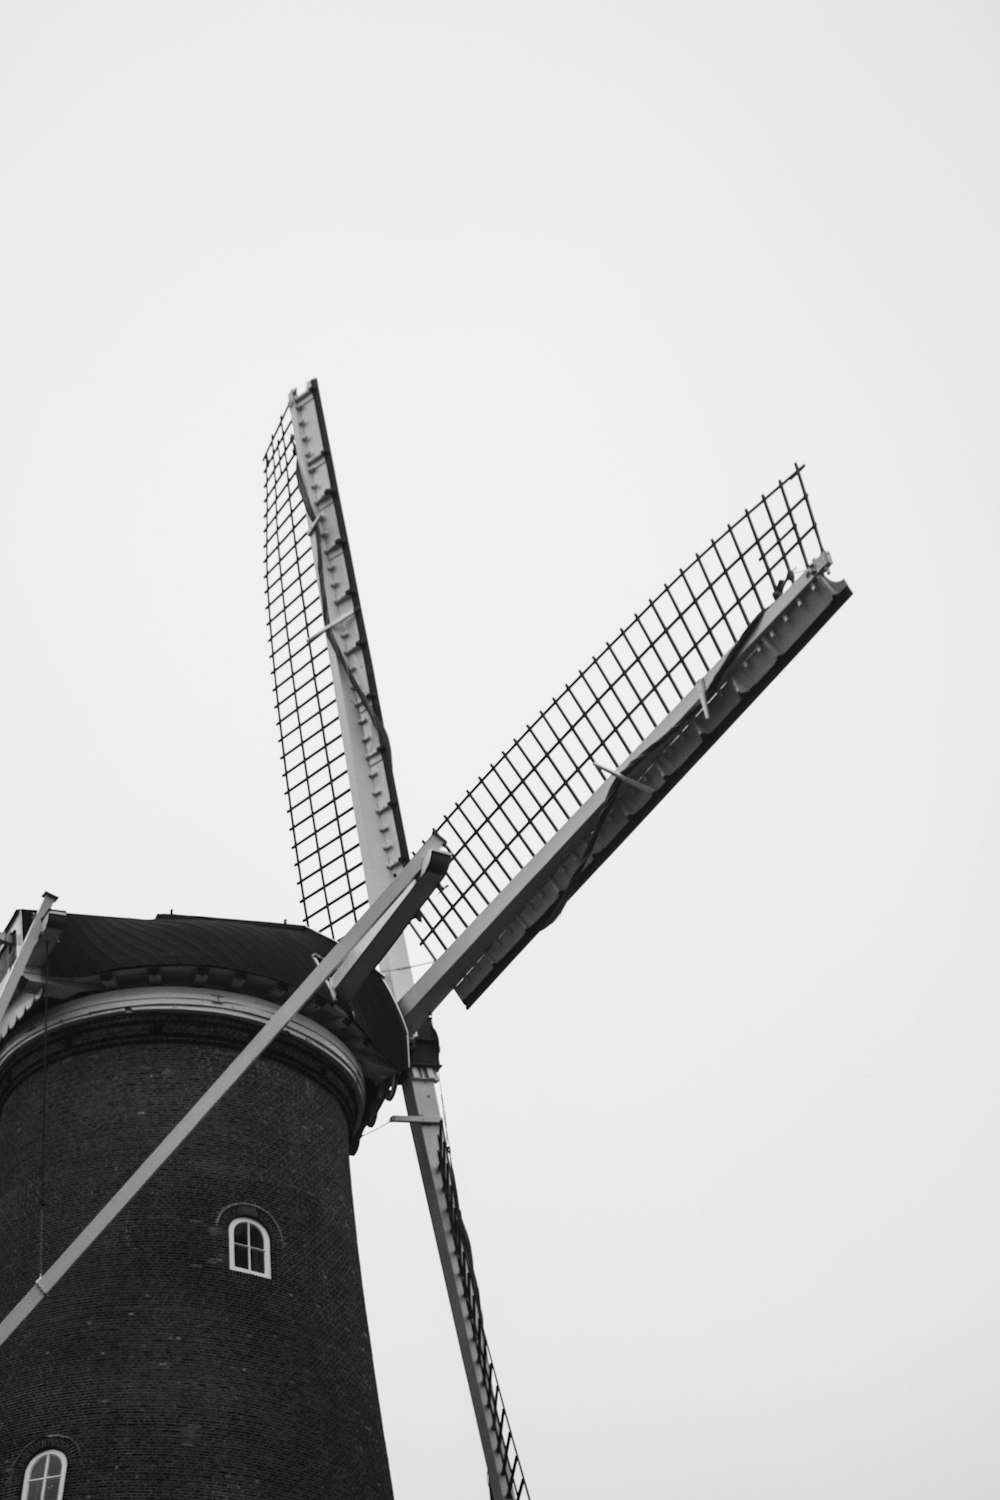 Graustufenfoto der Windmühle